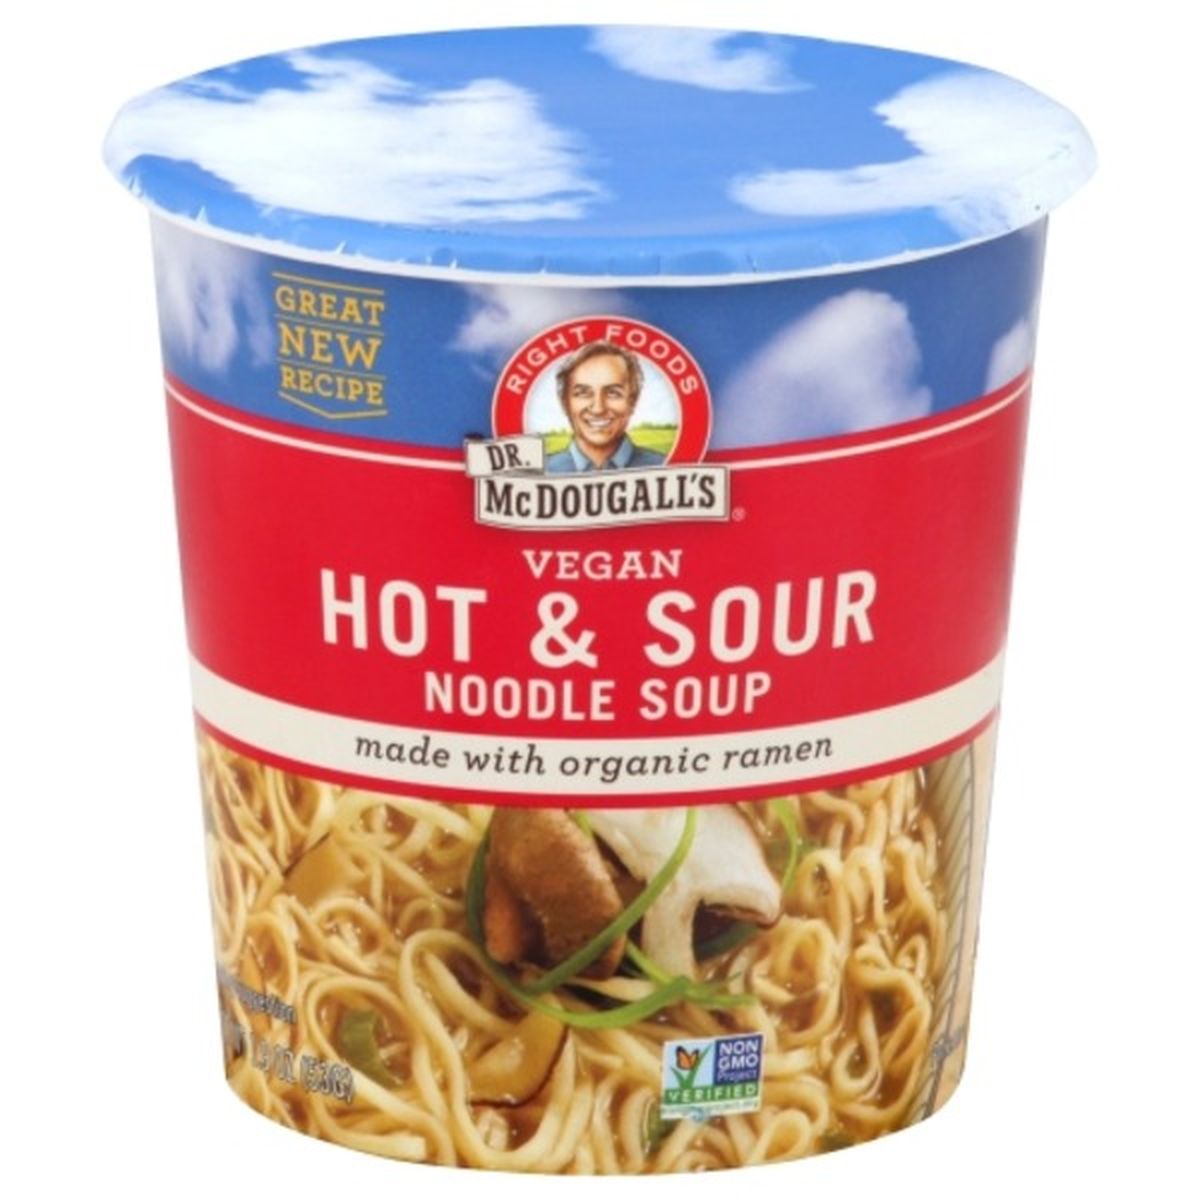 Calories in Dr. McDougall's Noodle Soup, Vegan, Hot & Sour